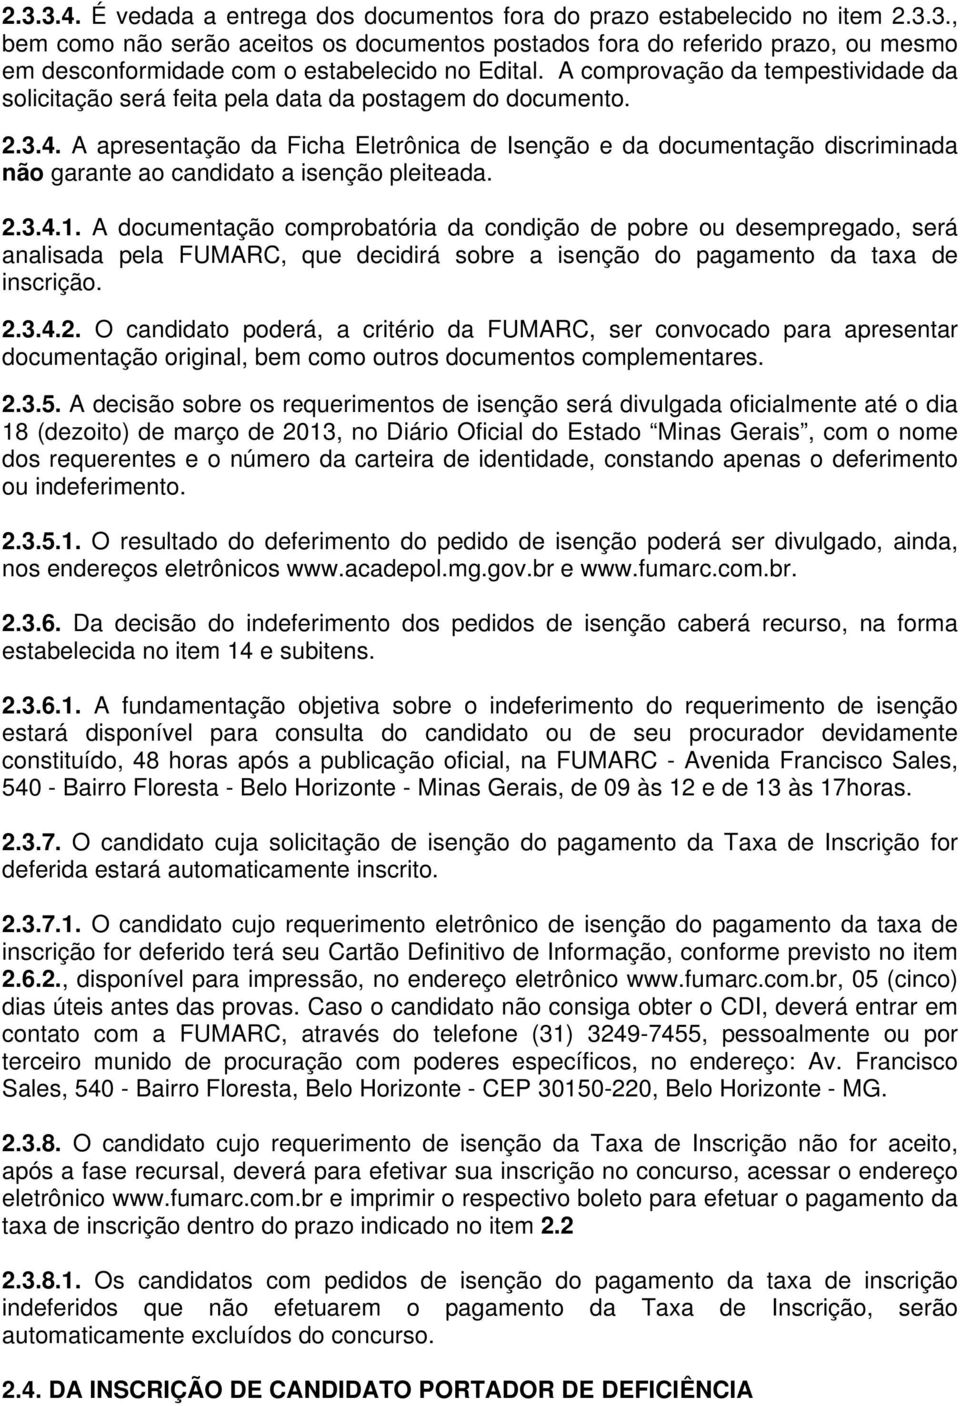 A apresentação da Ficha Eletrônica de Isenção e da documentação discriminada não garante ao candidato a isenção pleiteada. 2.3.4.1.